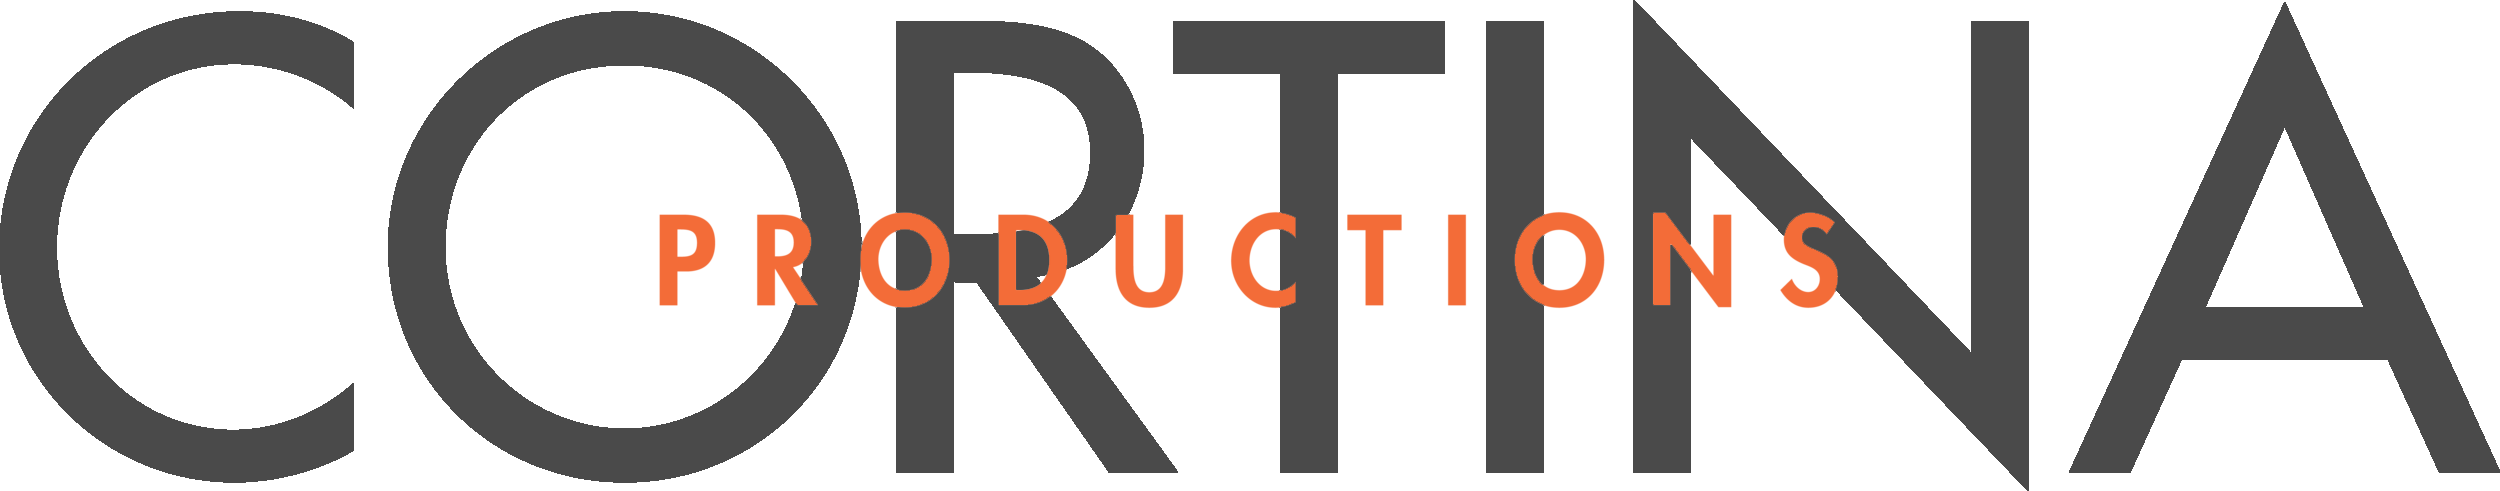 Cortina Productions grey logo